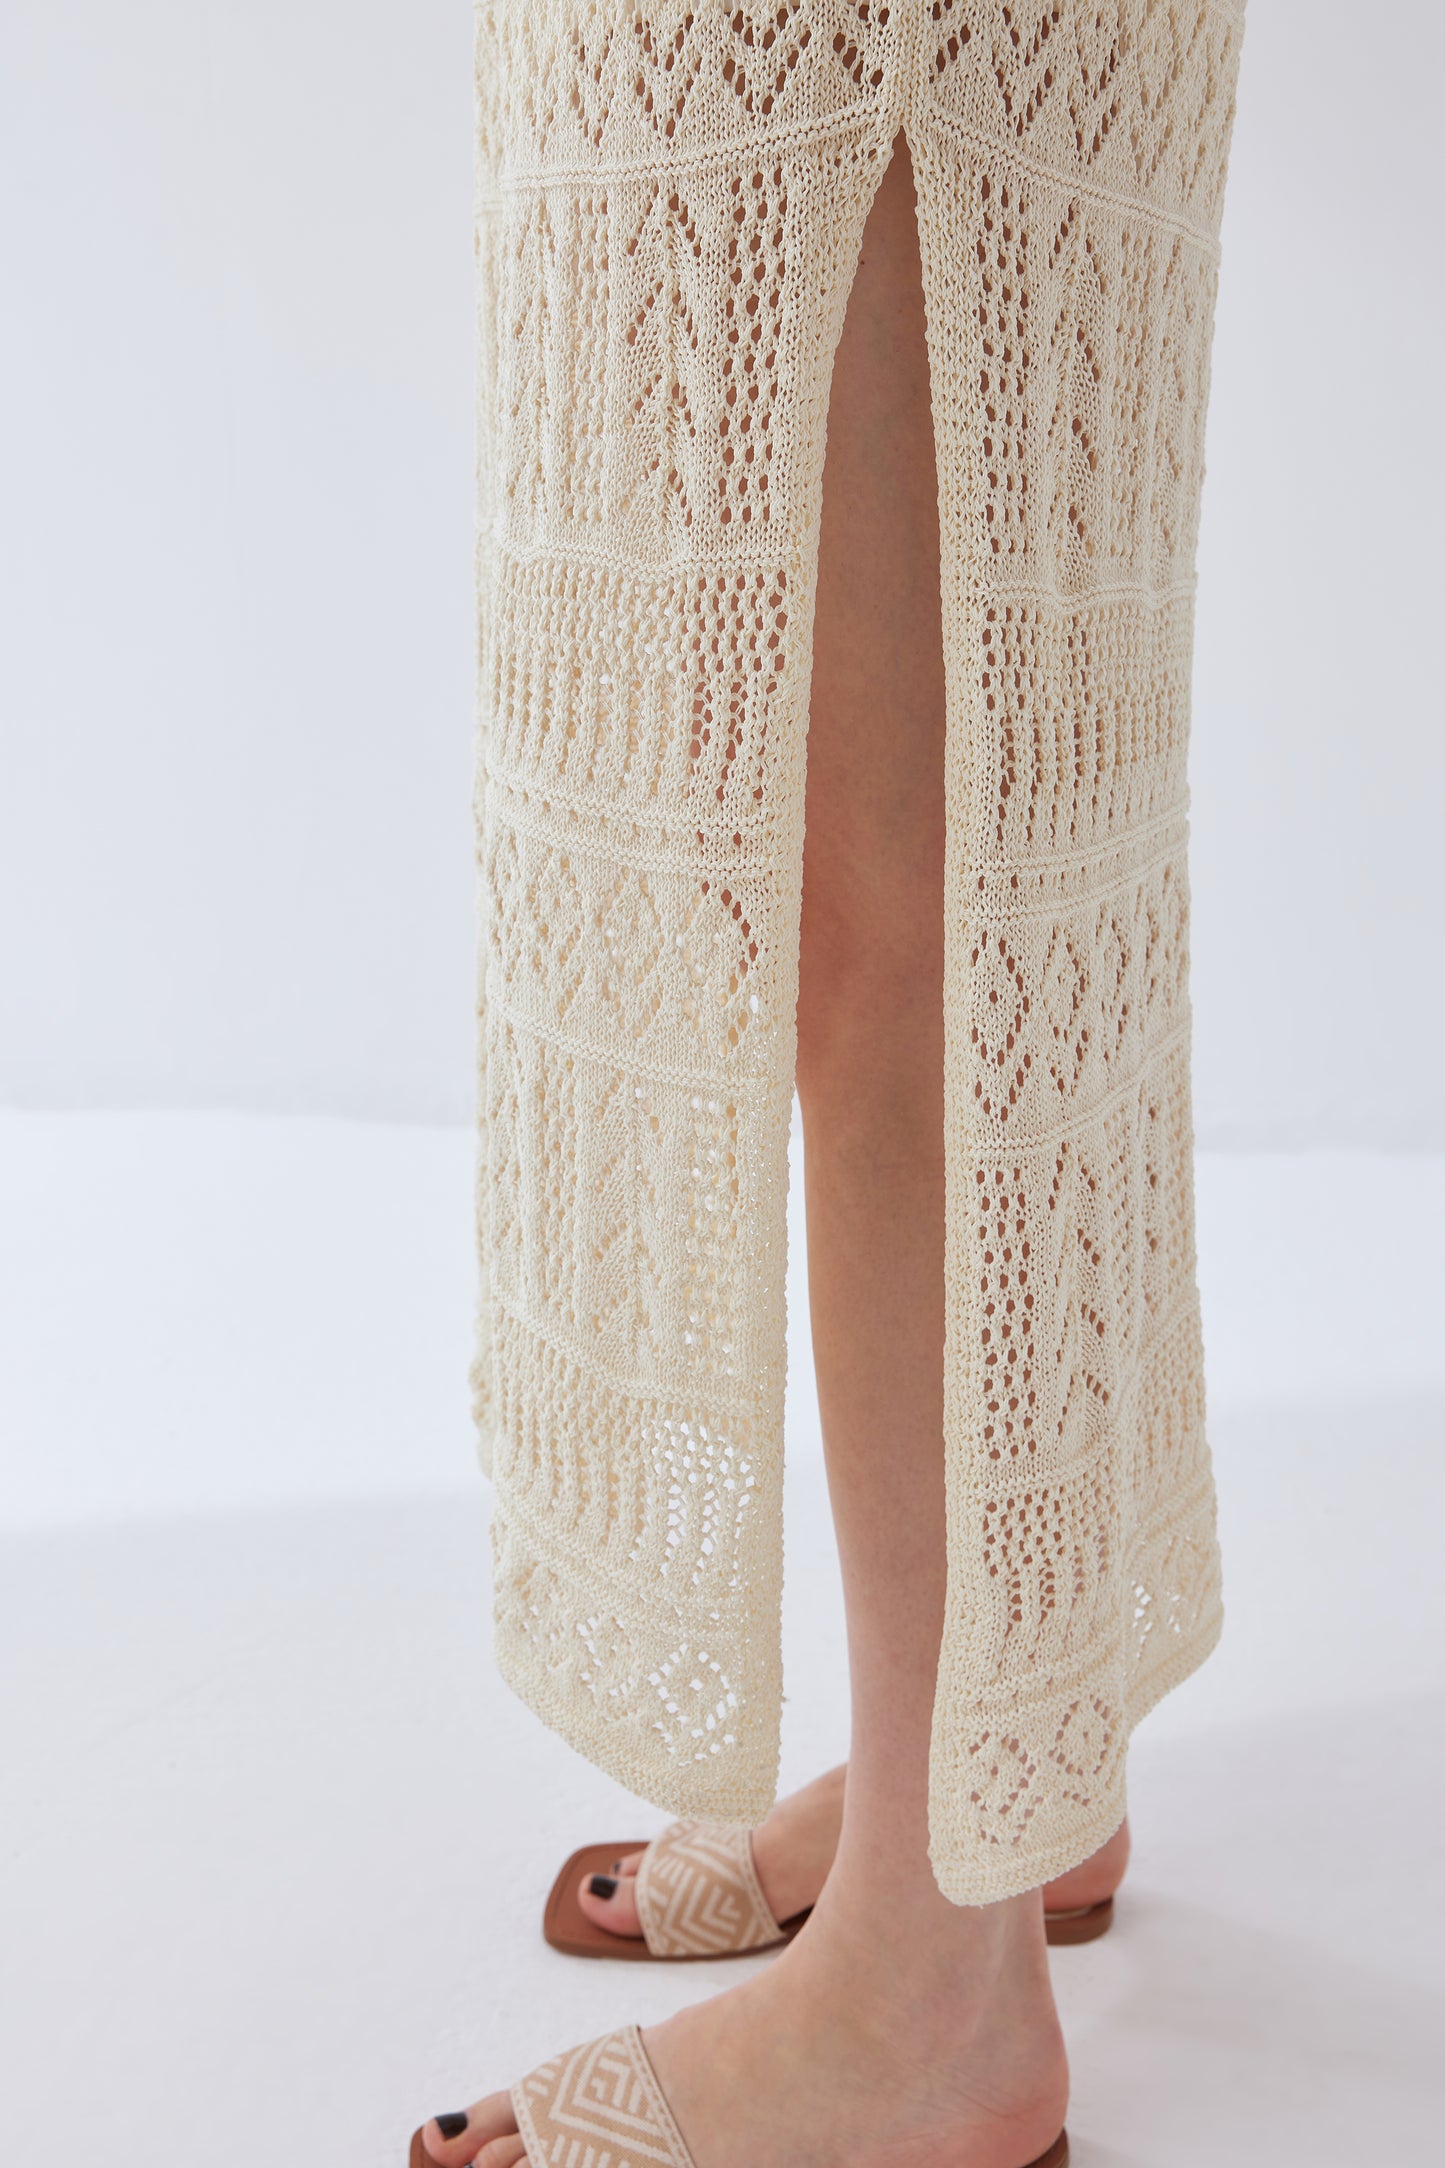 Gabriela Handcrafted Crochet Dress in Light Yarn Knit